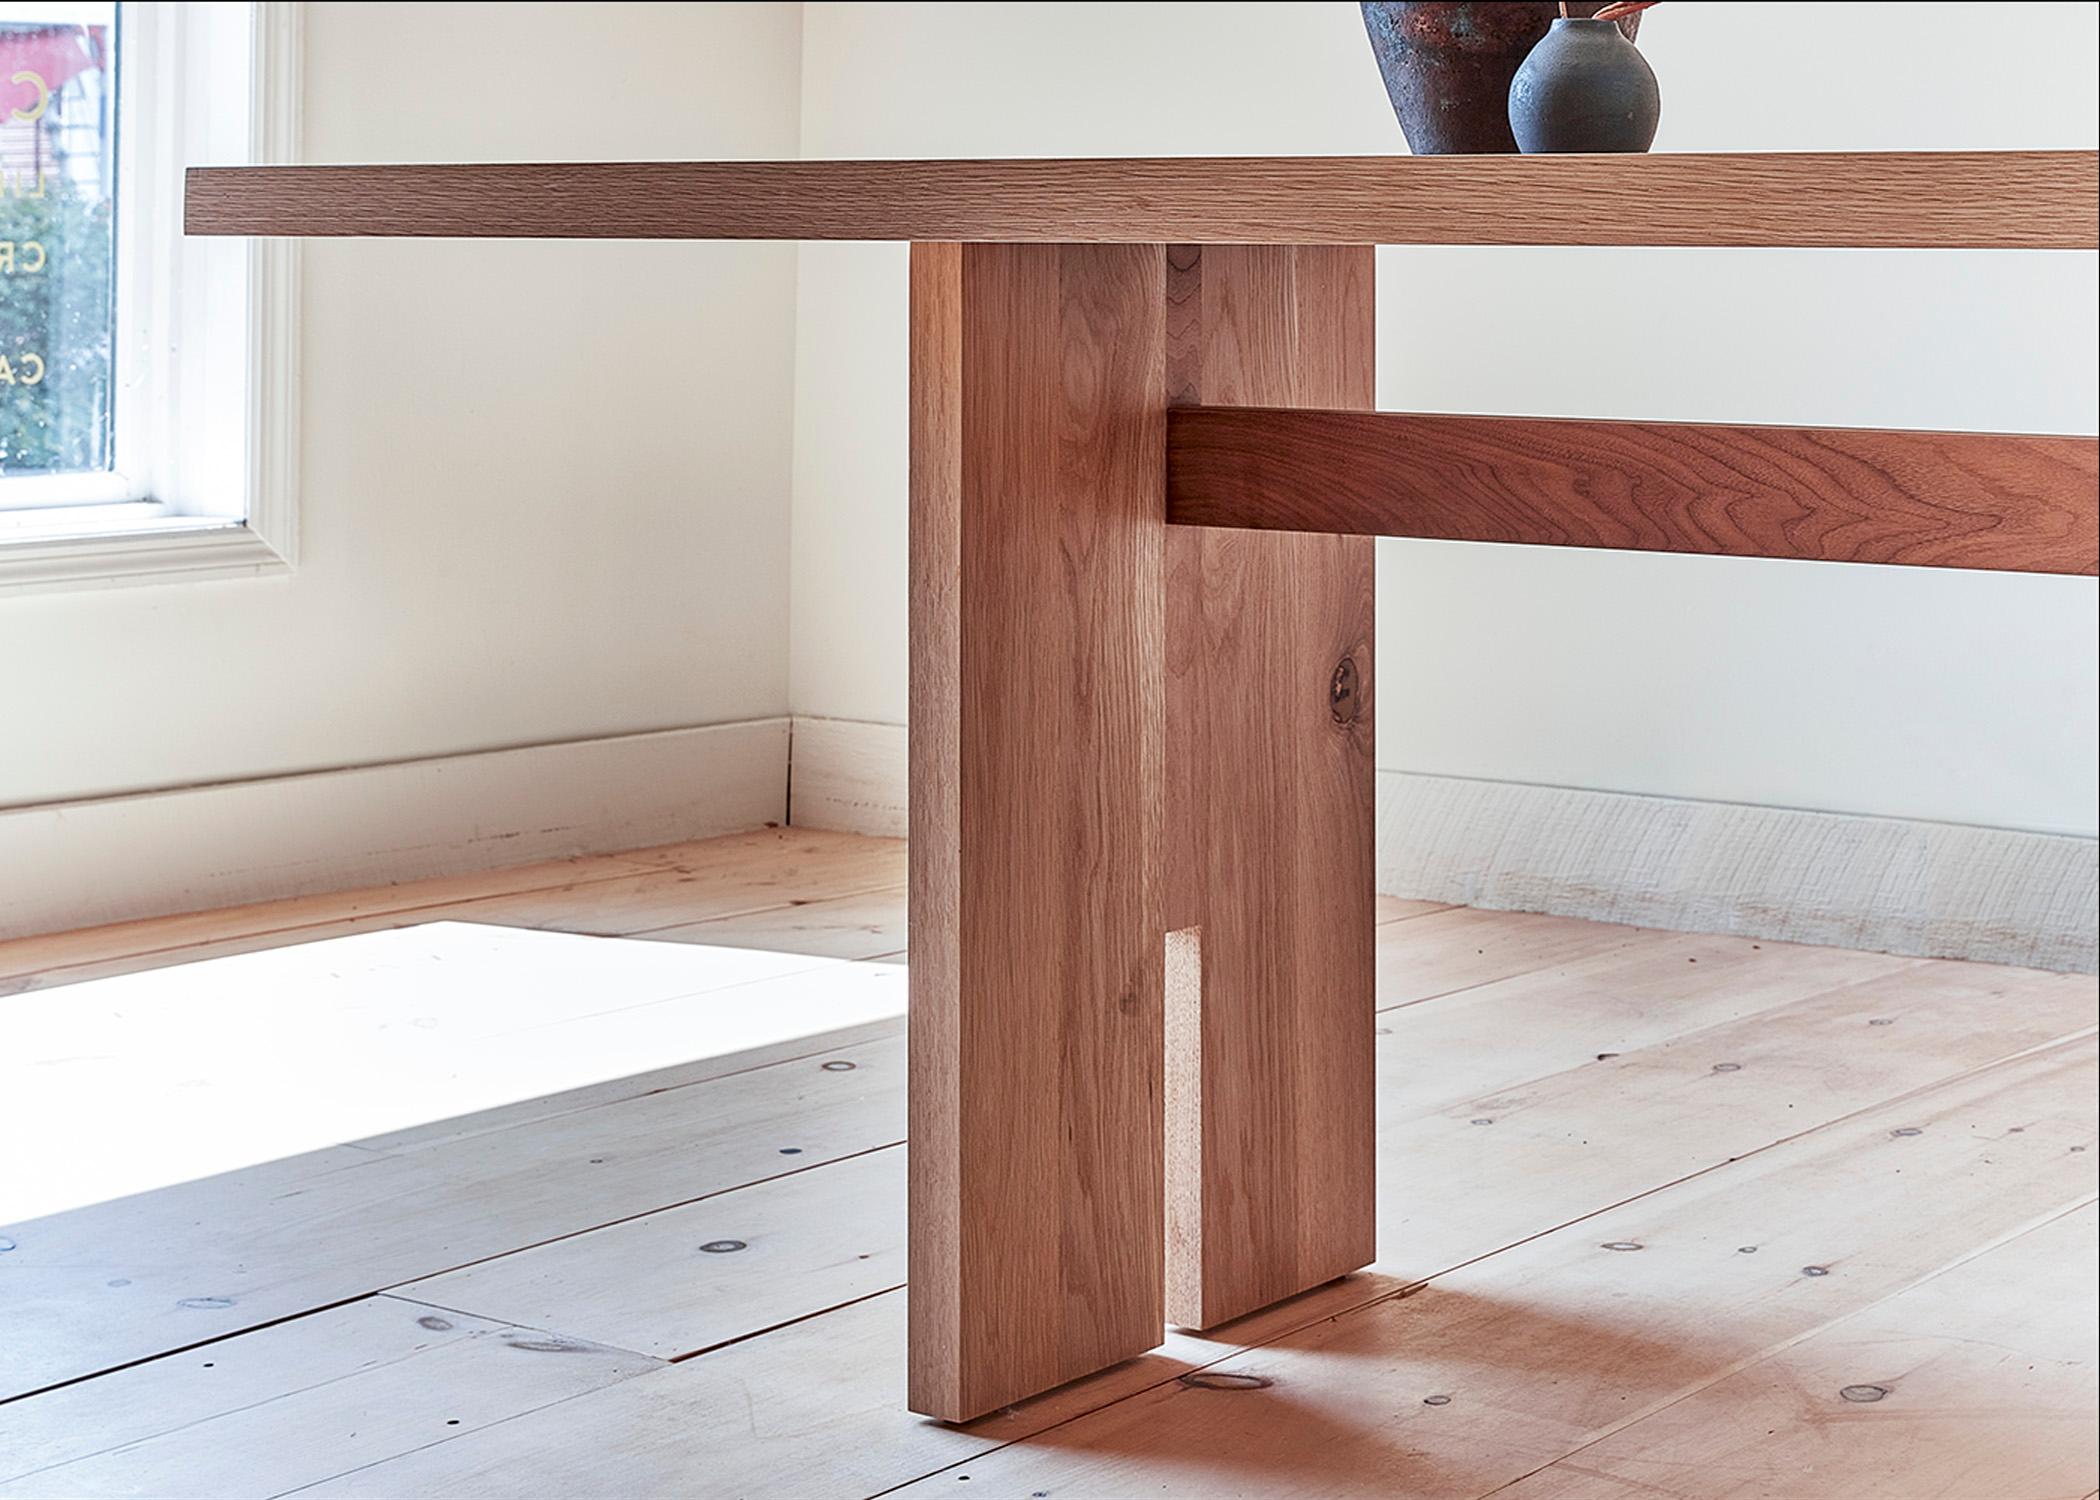 Dieser maßgefertigte Esstisch wird in den Vereinigten Staaten in Handarbeit aus Hartholz hergestellt. Er zeichnet sich durch ein modernes Tischdesign mit einem Korpus aus massiver Weißeiche und einer minimalistischen Nussbaumintarsie und -streckung